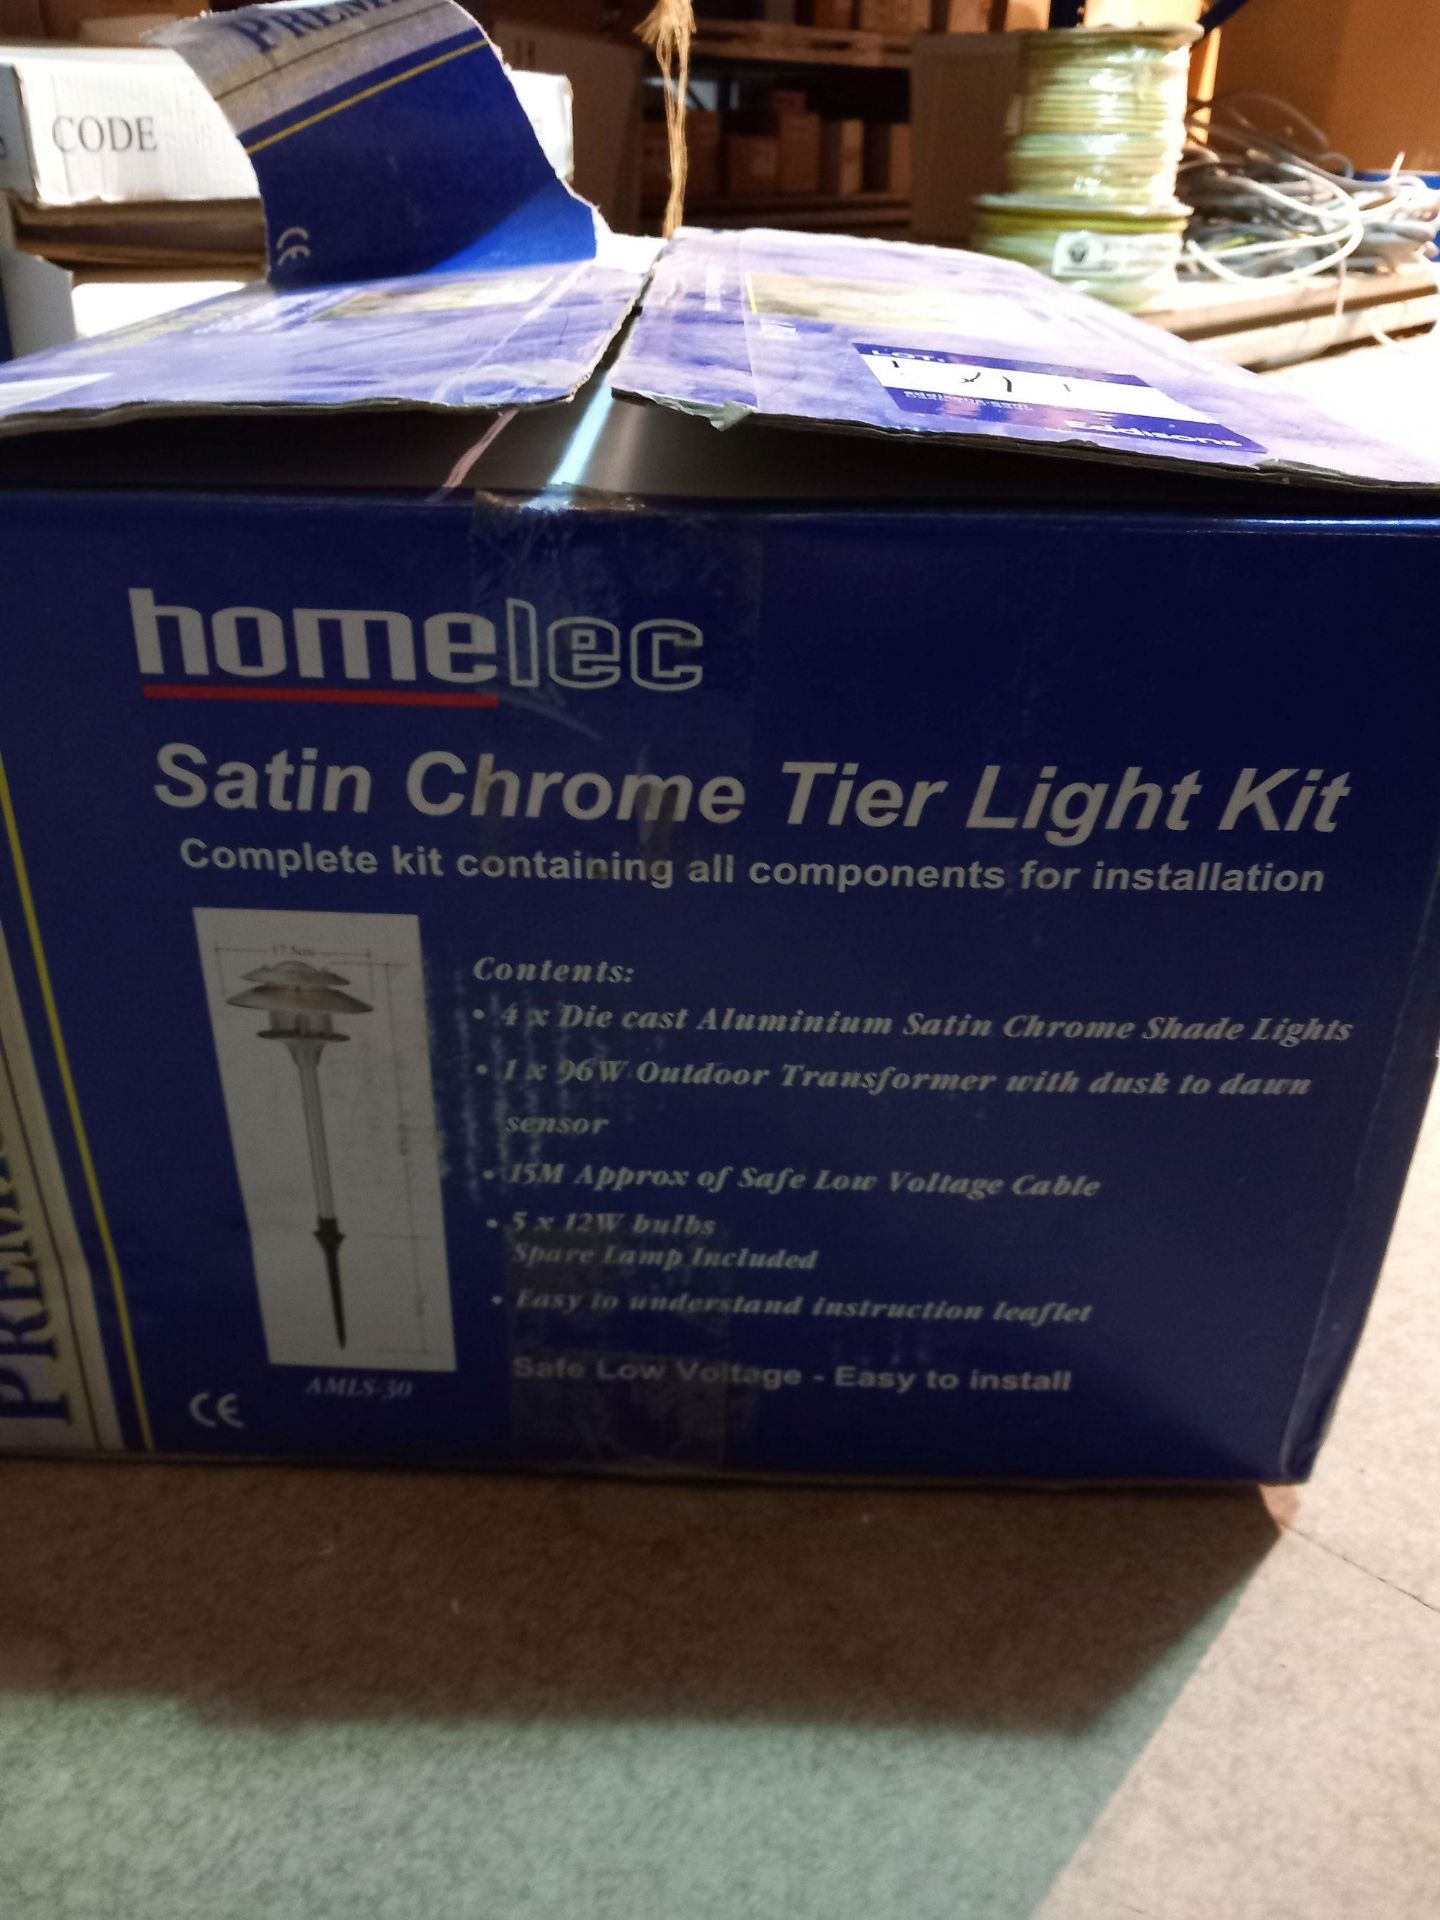 Homelec Satin Chrome Tier Light Kit (new) - Image 2 of 2